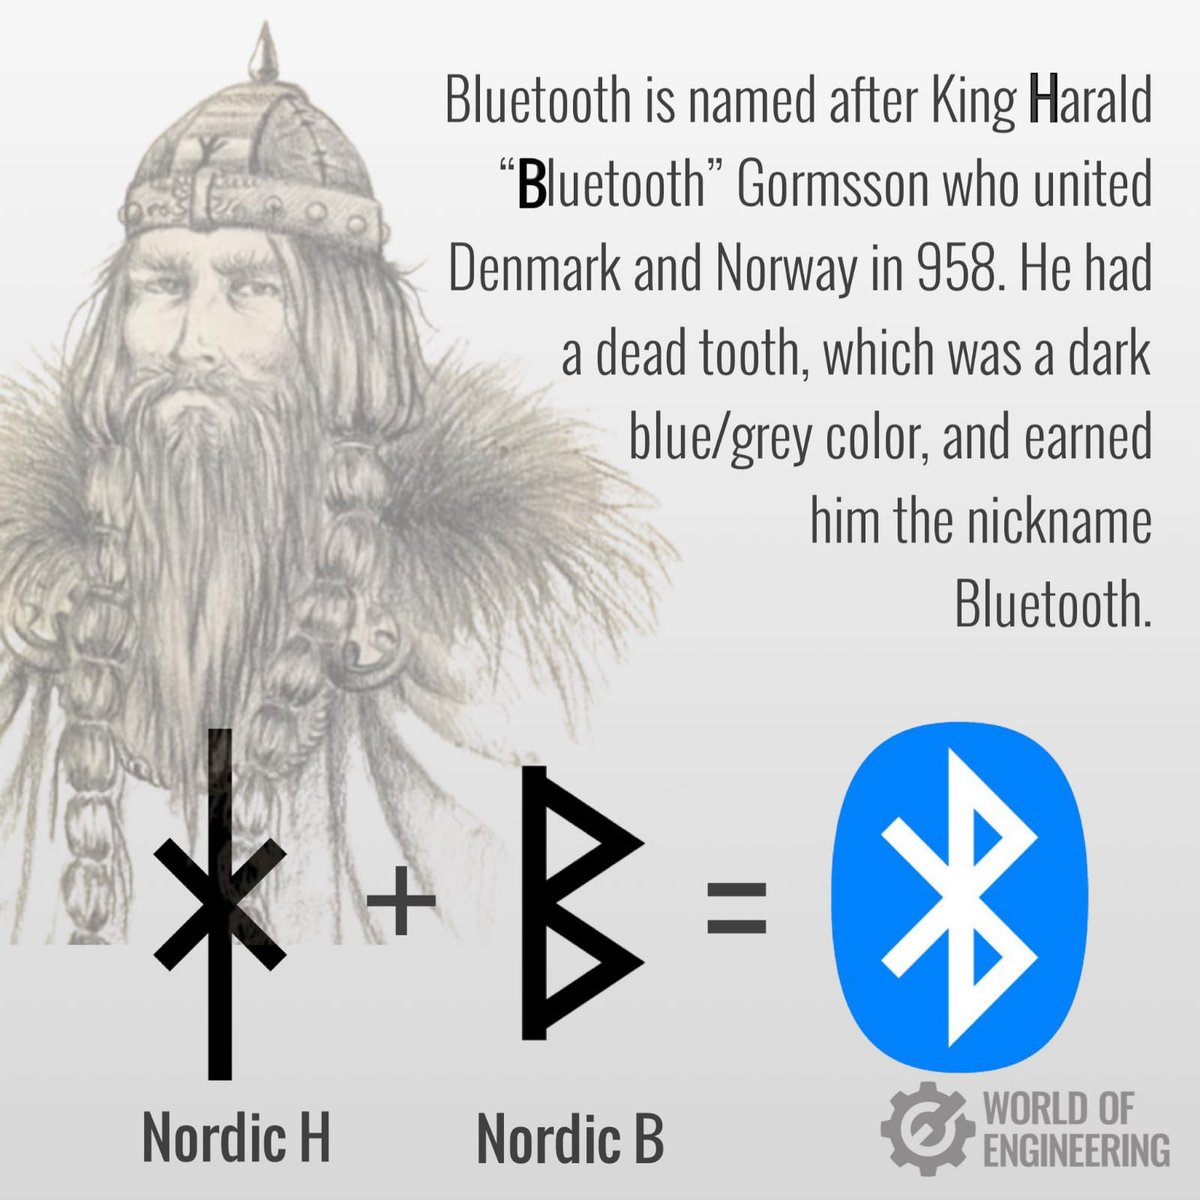 #محبت_مافیا
Bluetooth is actually named after the Viking king who united Denmark and Norway.